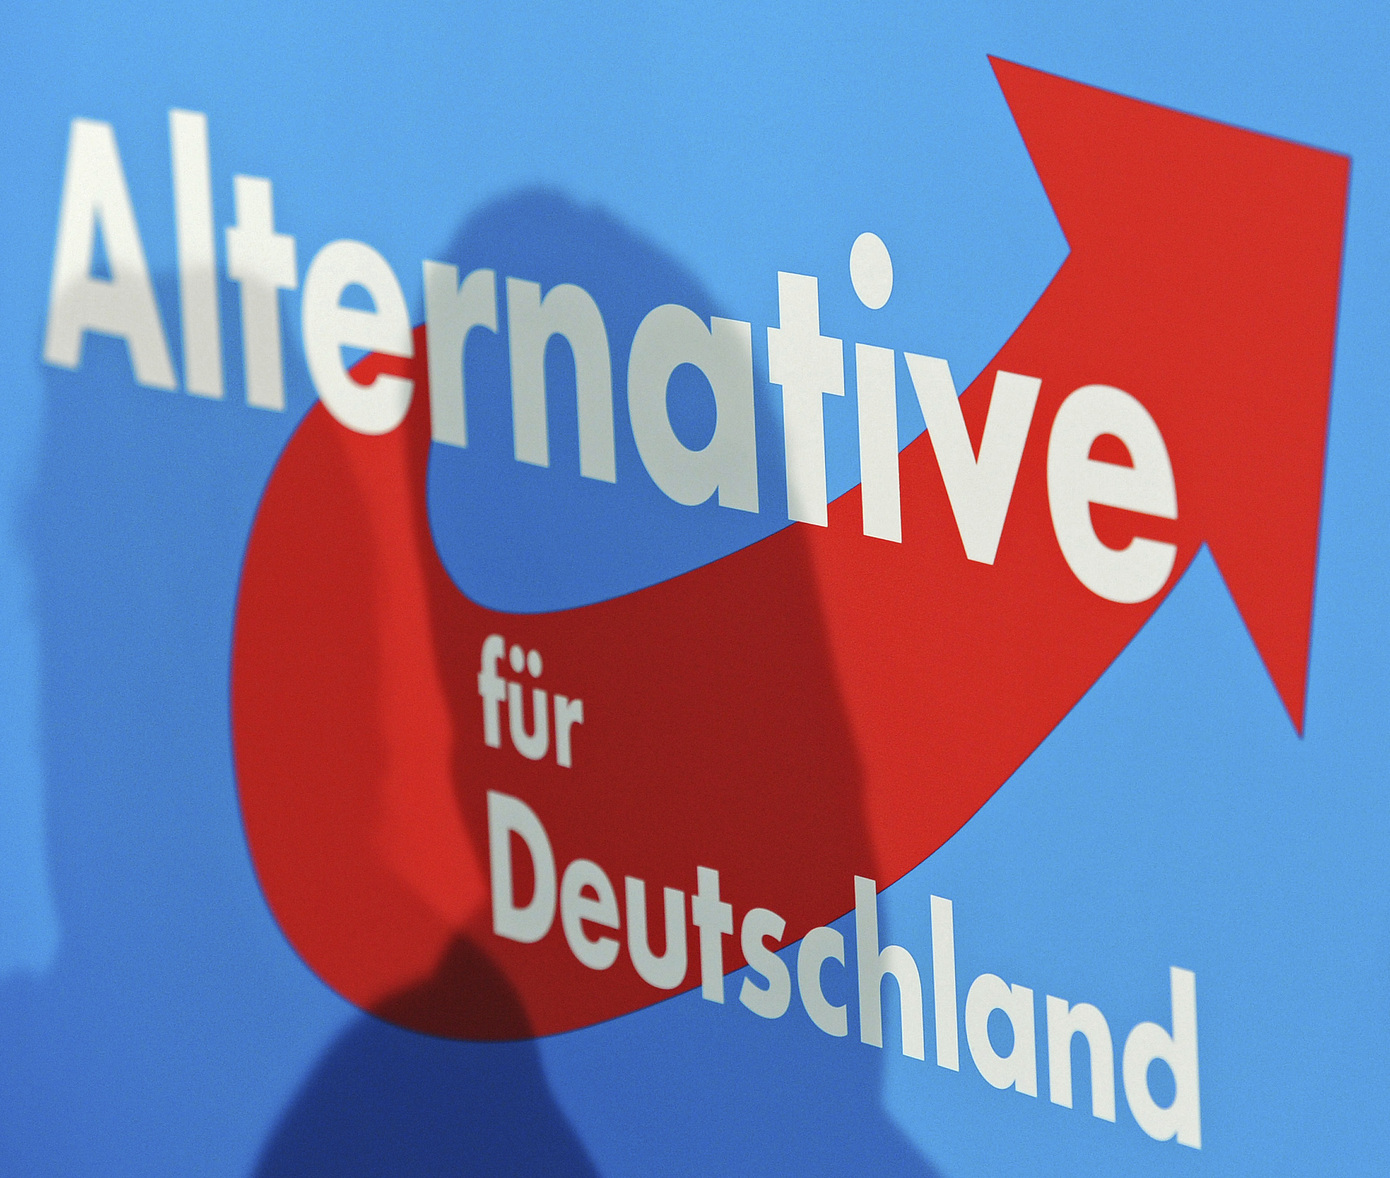 Η Αλίς Βάιντελ και ο Τίνο Χρουπάλα επανεξελέγησαν στην ηγεσία της «Εναλλακτικής για την Γερμανία» (AfD)